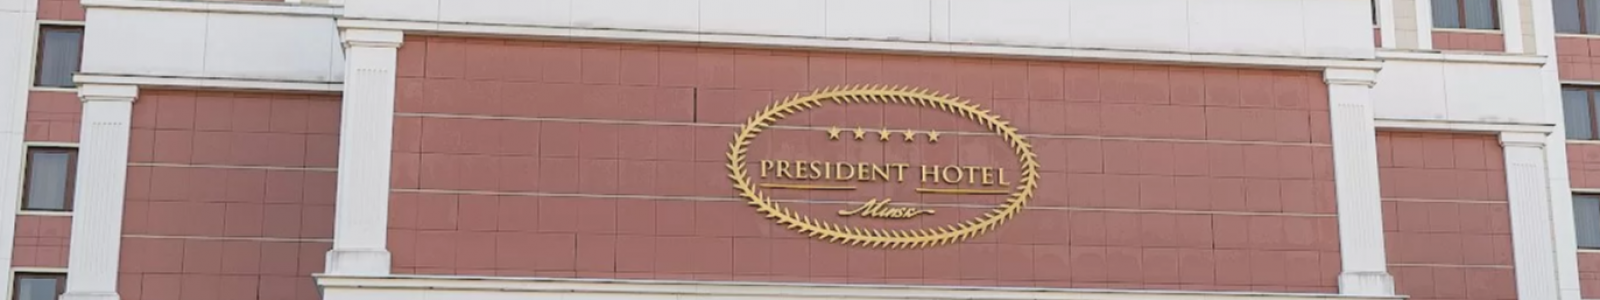 Унитарное предприятие "Президент-Отель"